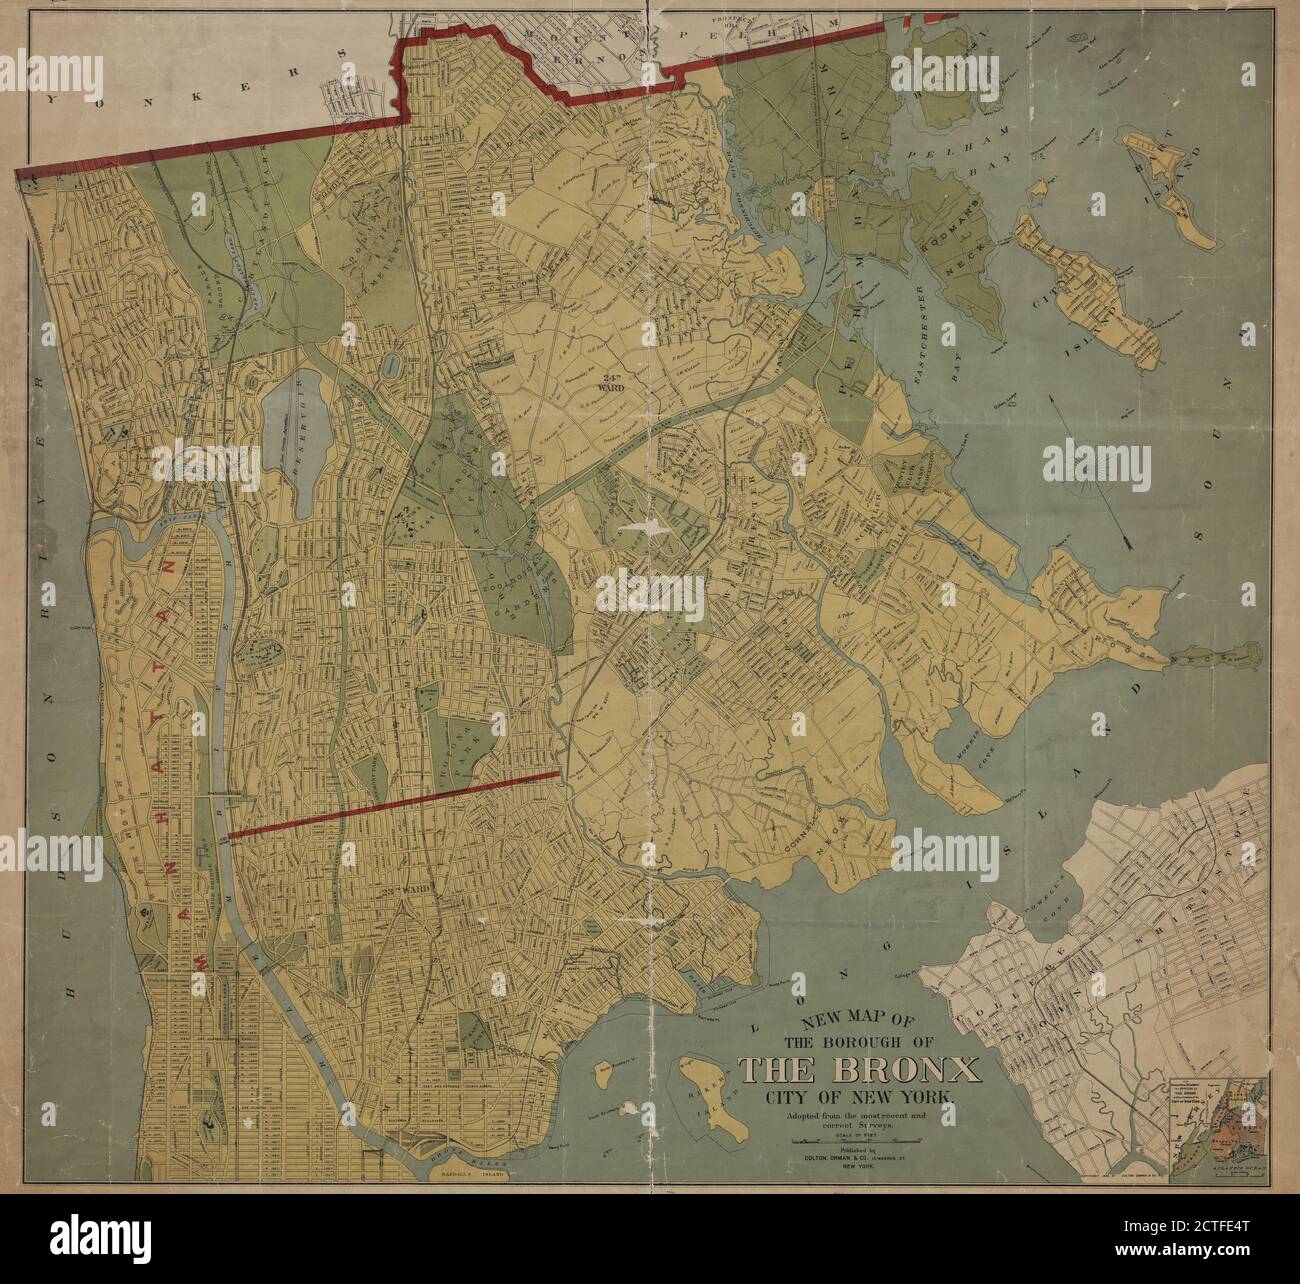 Carte de l'arrondissement du Bronx, ville de New York, adoptée à partir des relevés les plus récents et les plus corrects., cartographie, cartes, 1898 Banque D'Images